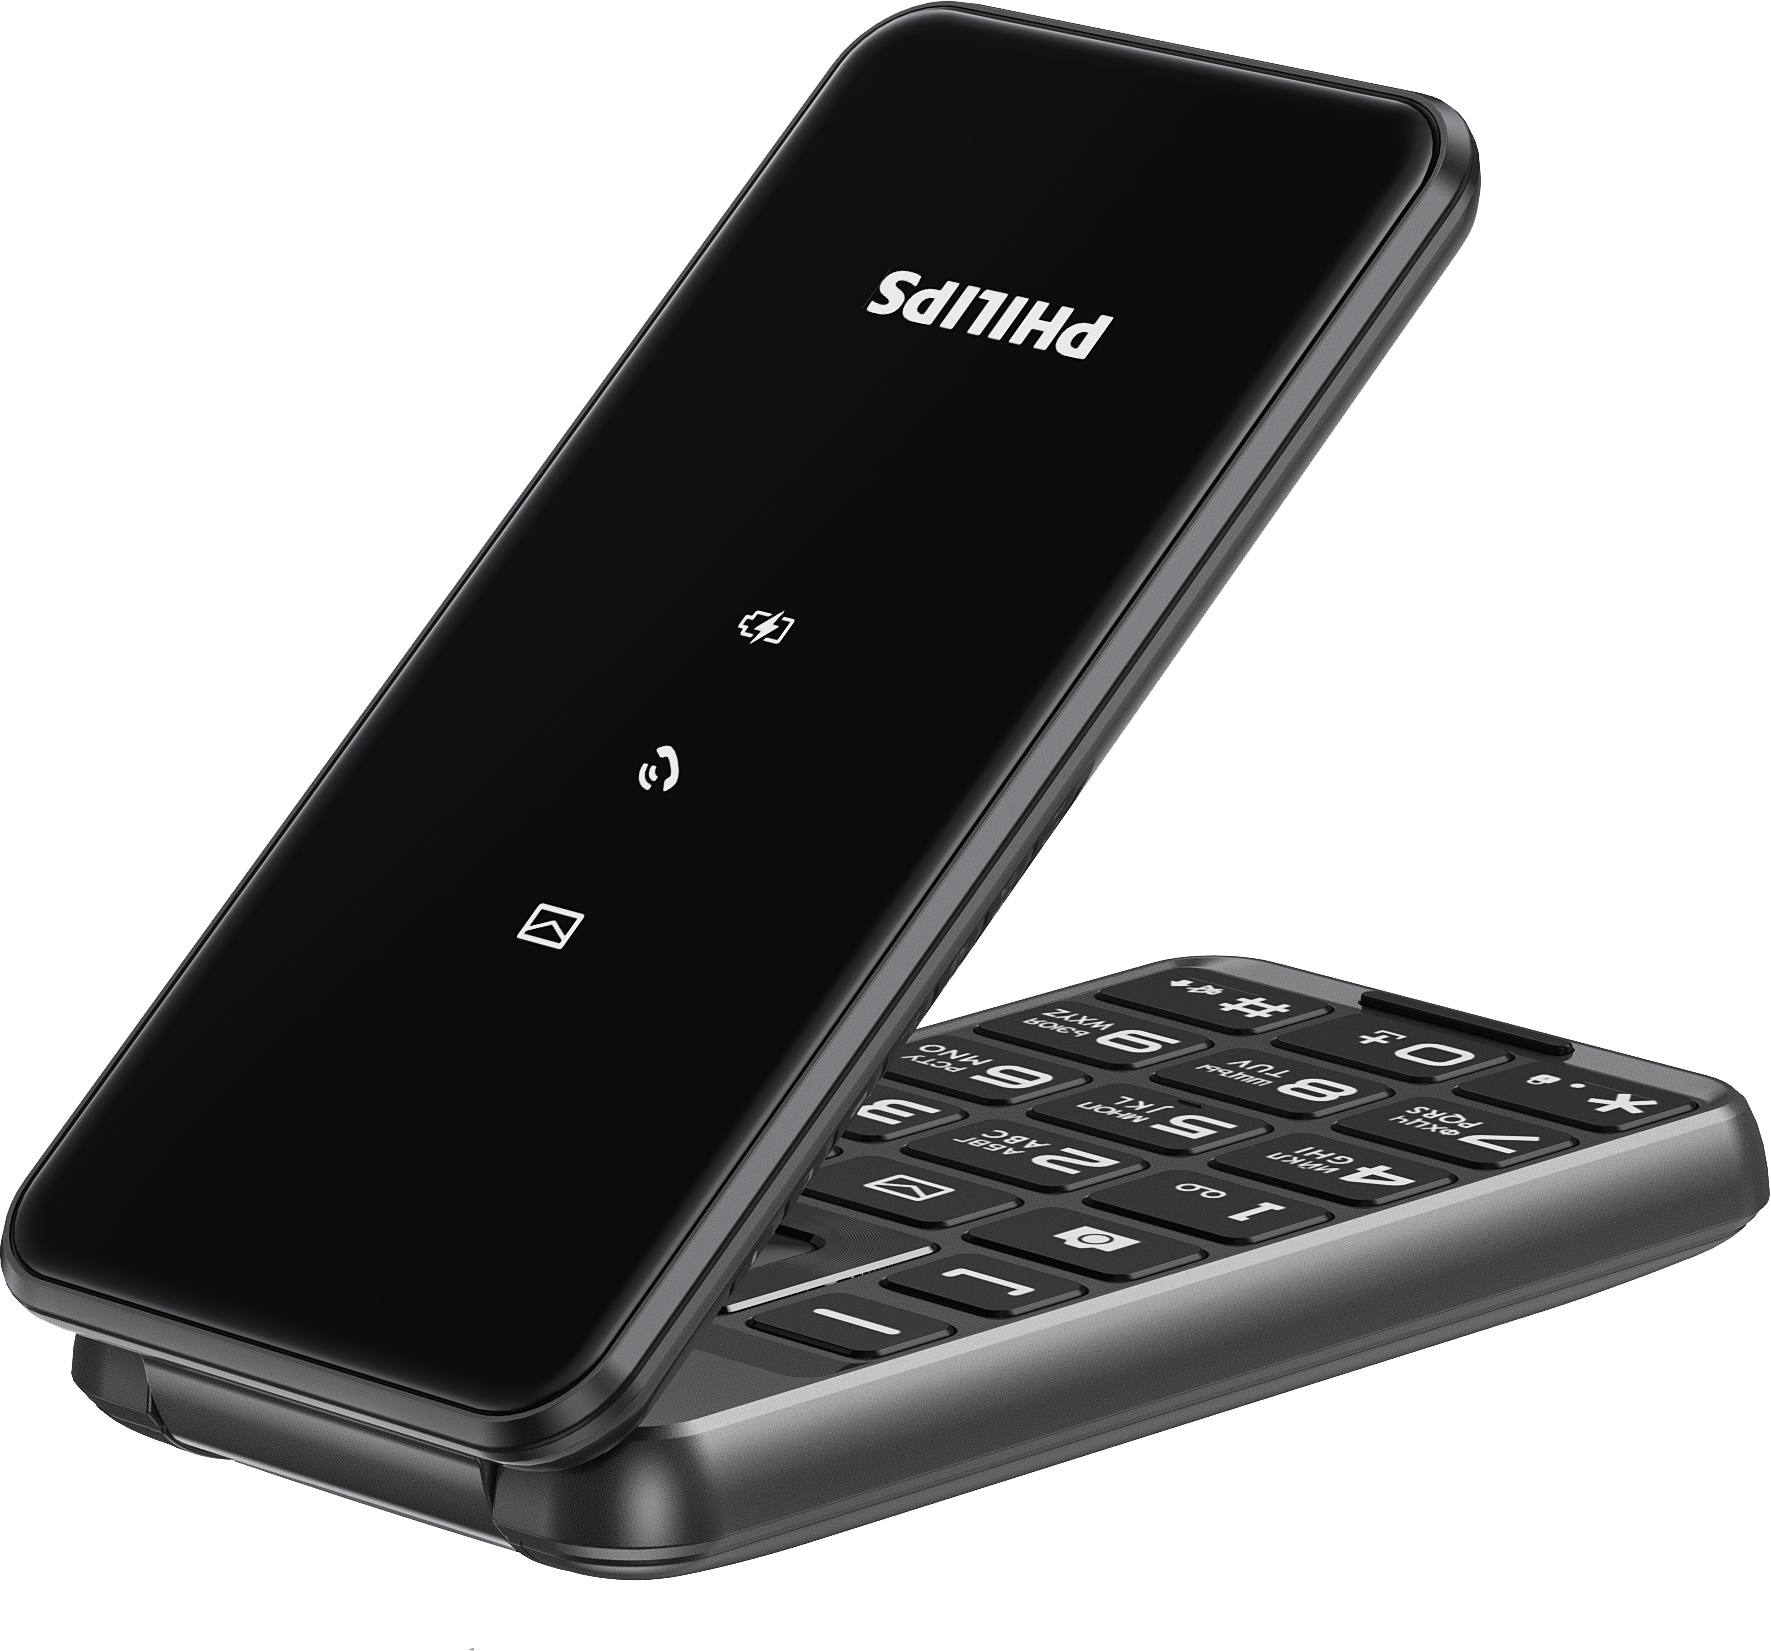 Мобильный телефон Philips E2601 Xenium, темно-серый 